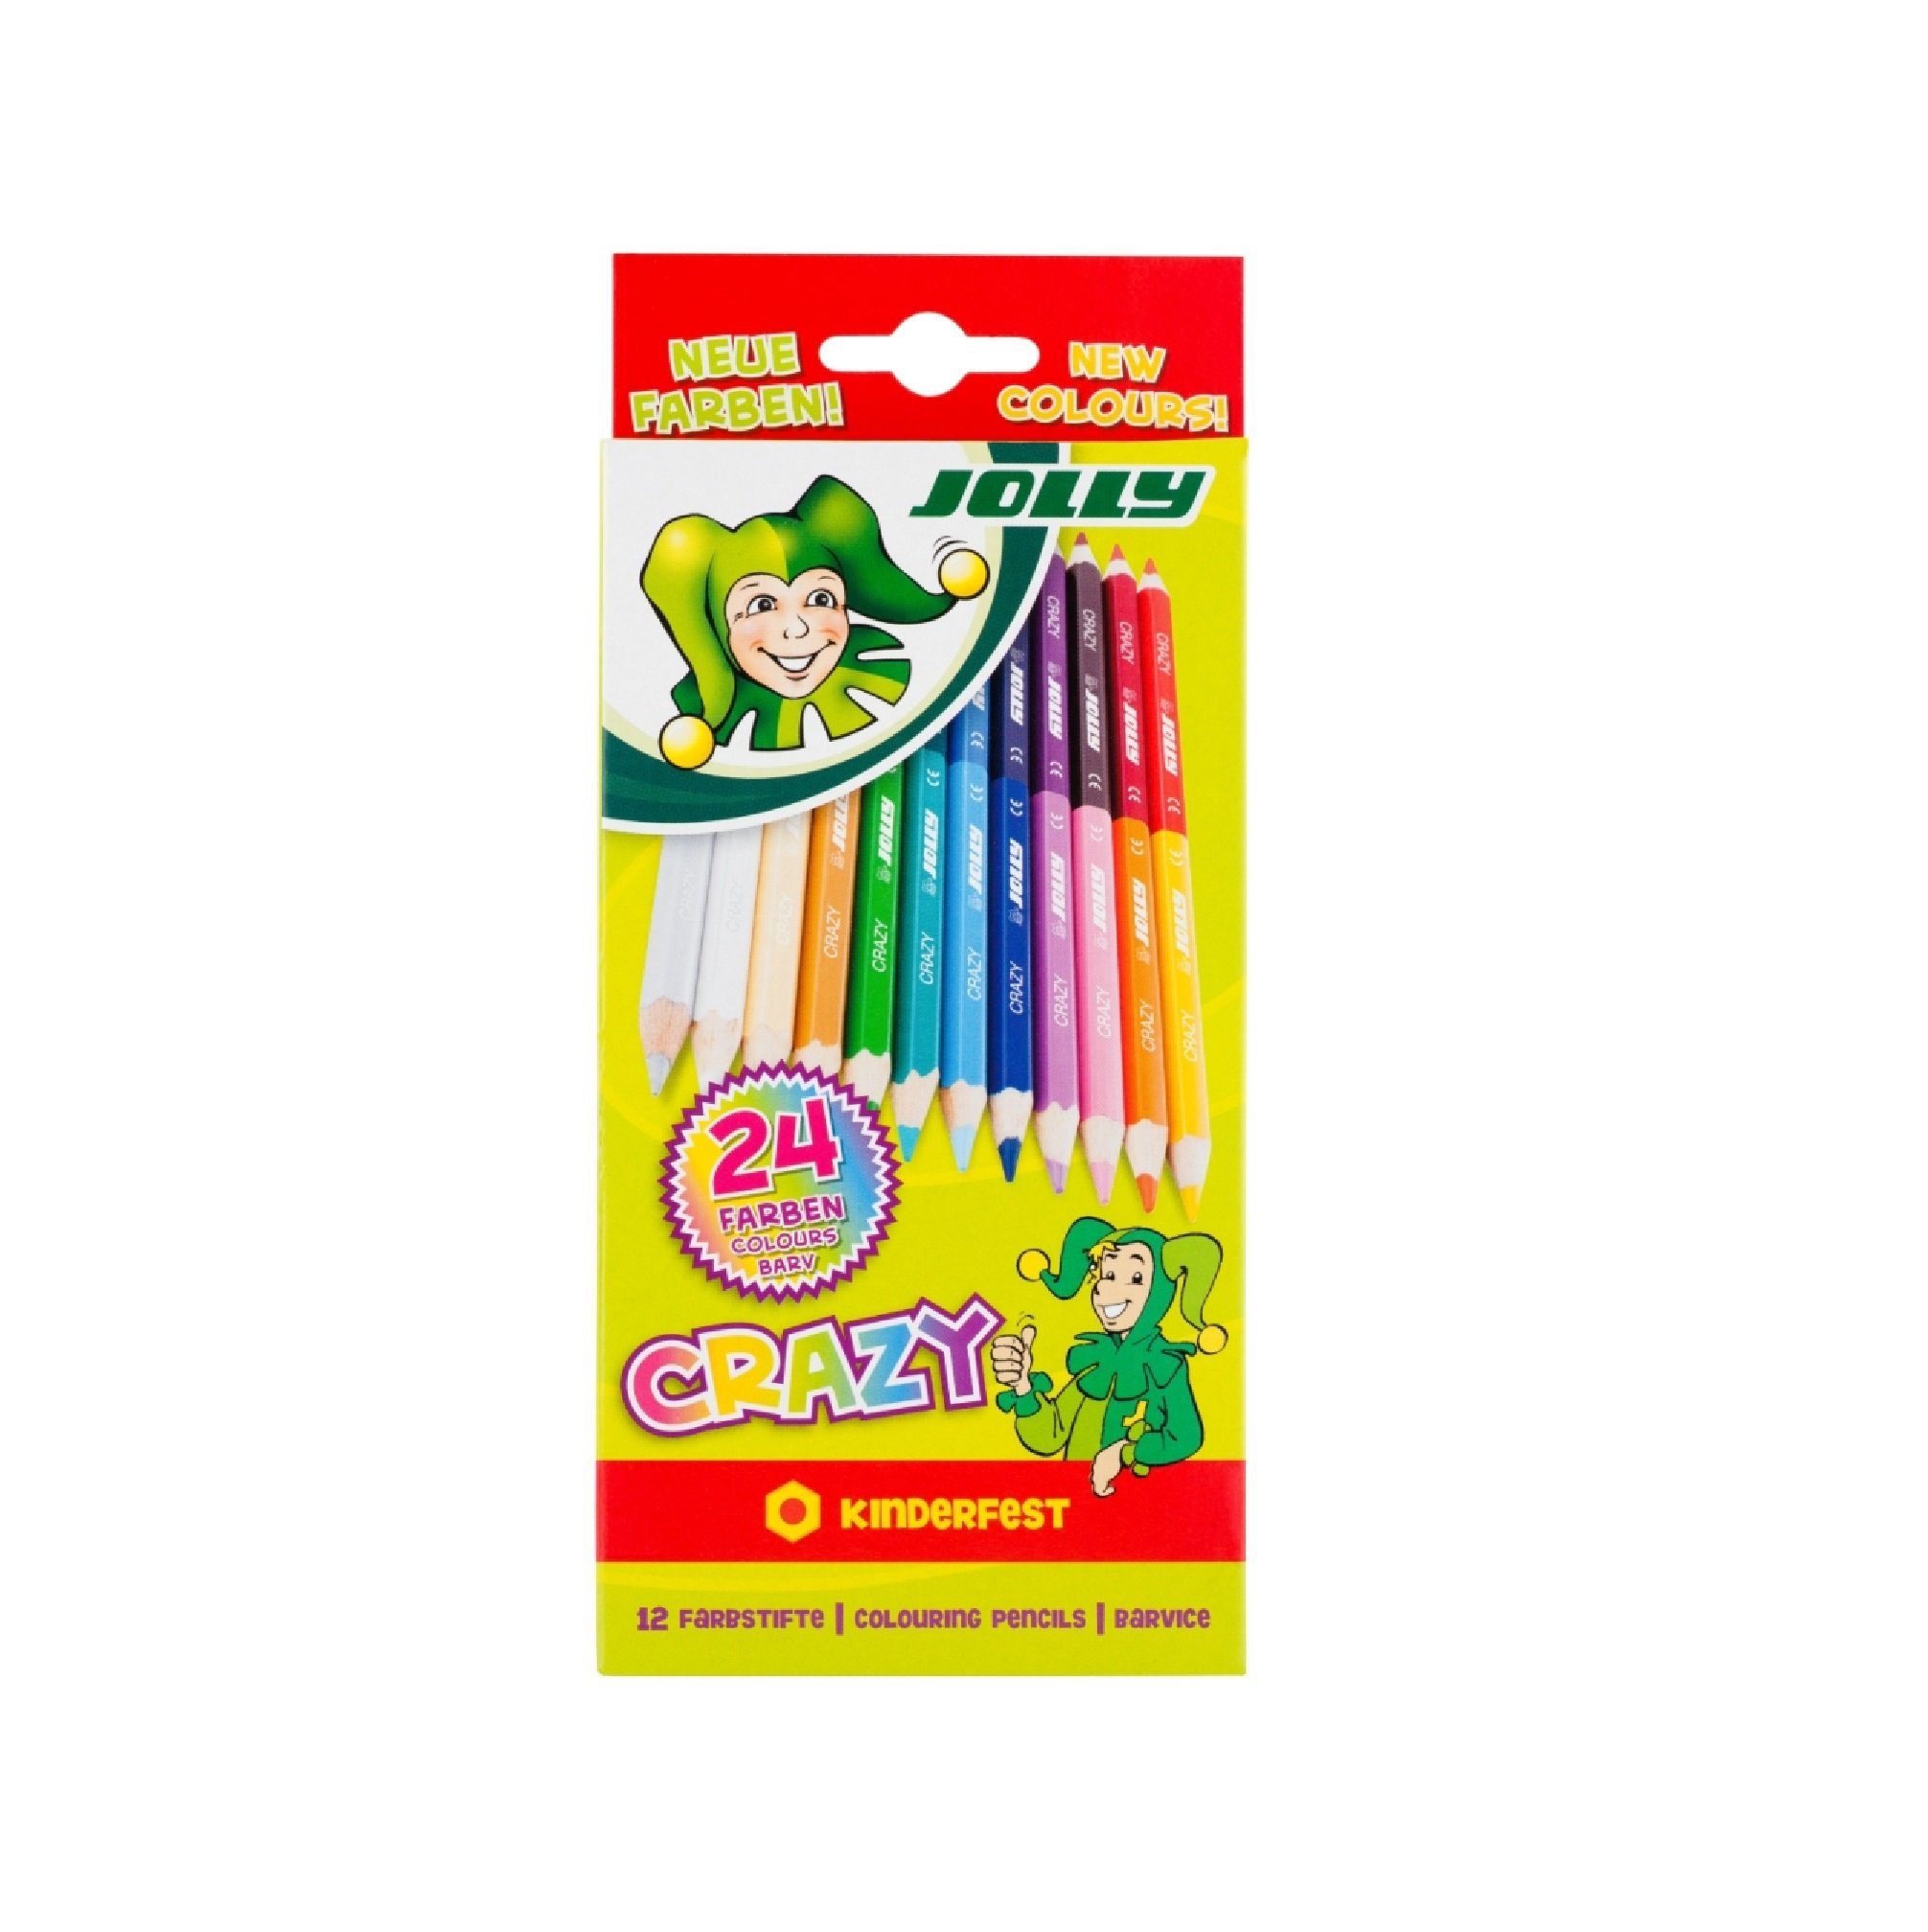 JOLLY Buntstift 3000-0503, Superstick Crazy, 12 doppelseitige Buntstifte - 24 tolle Farben - Made in Austria